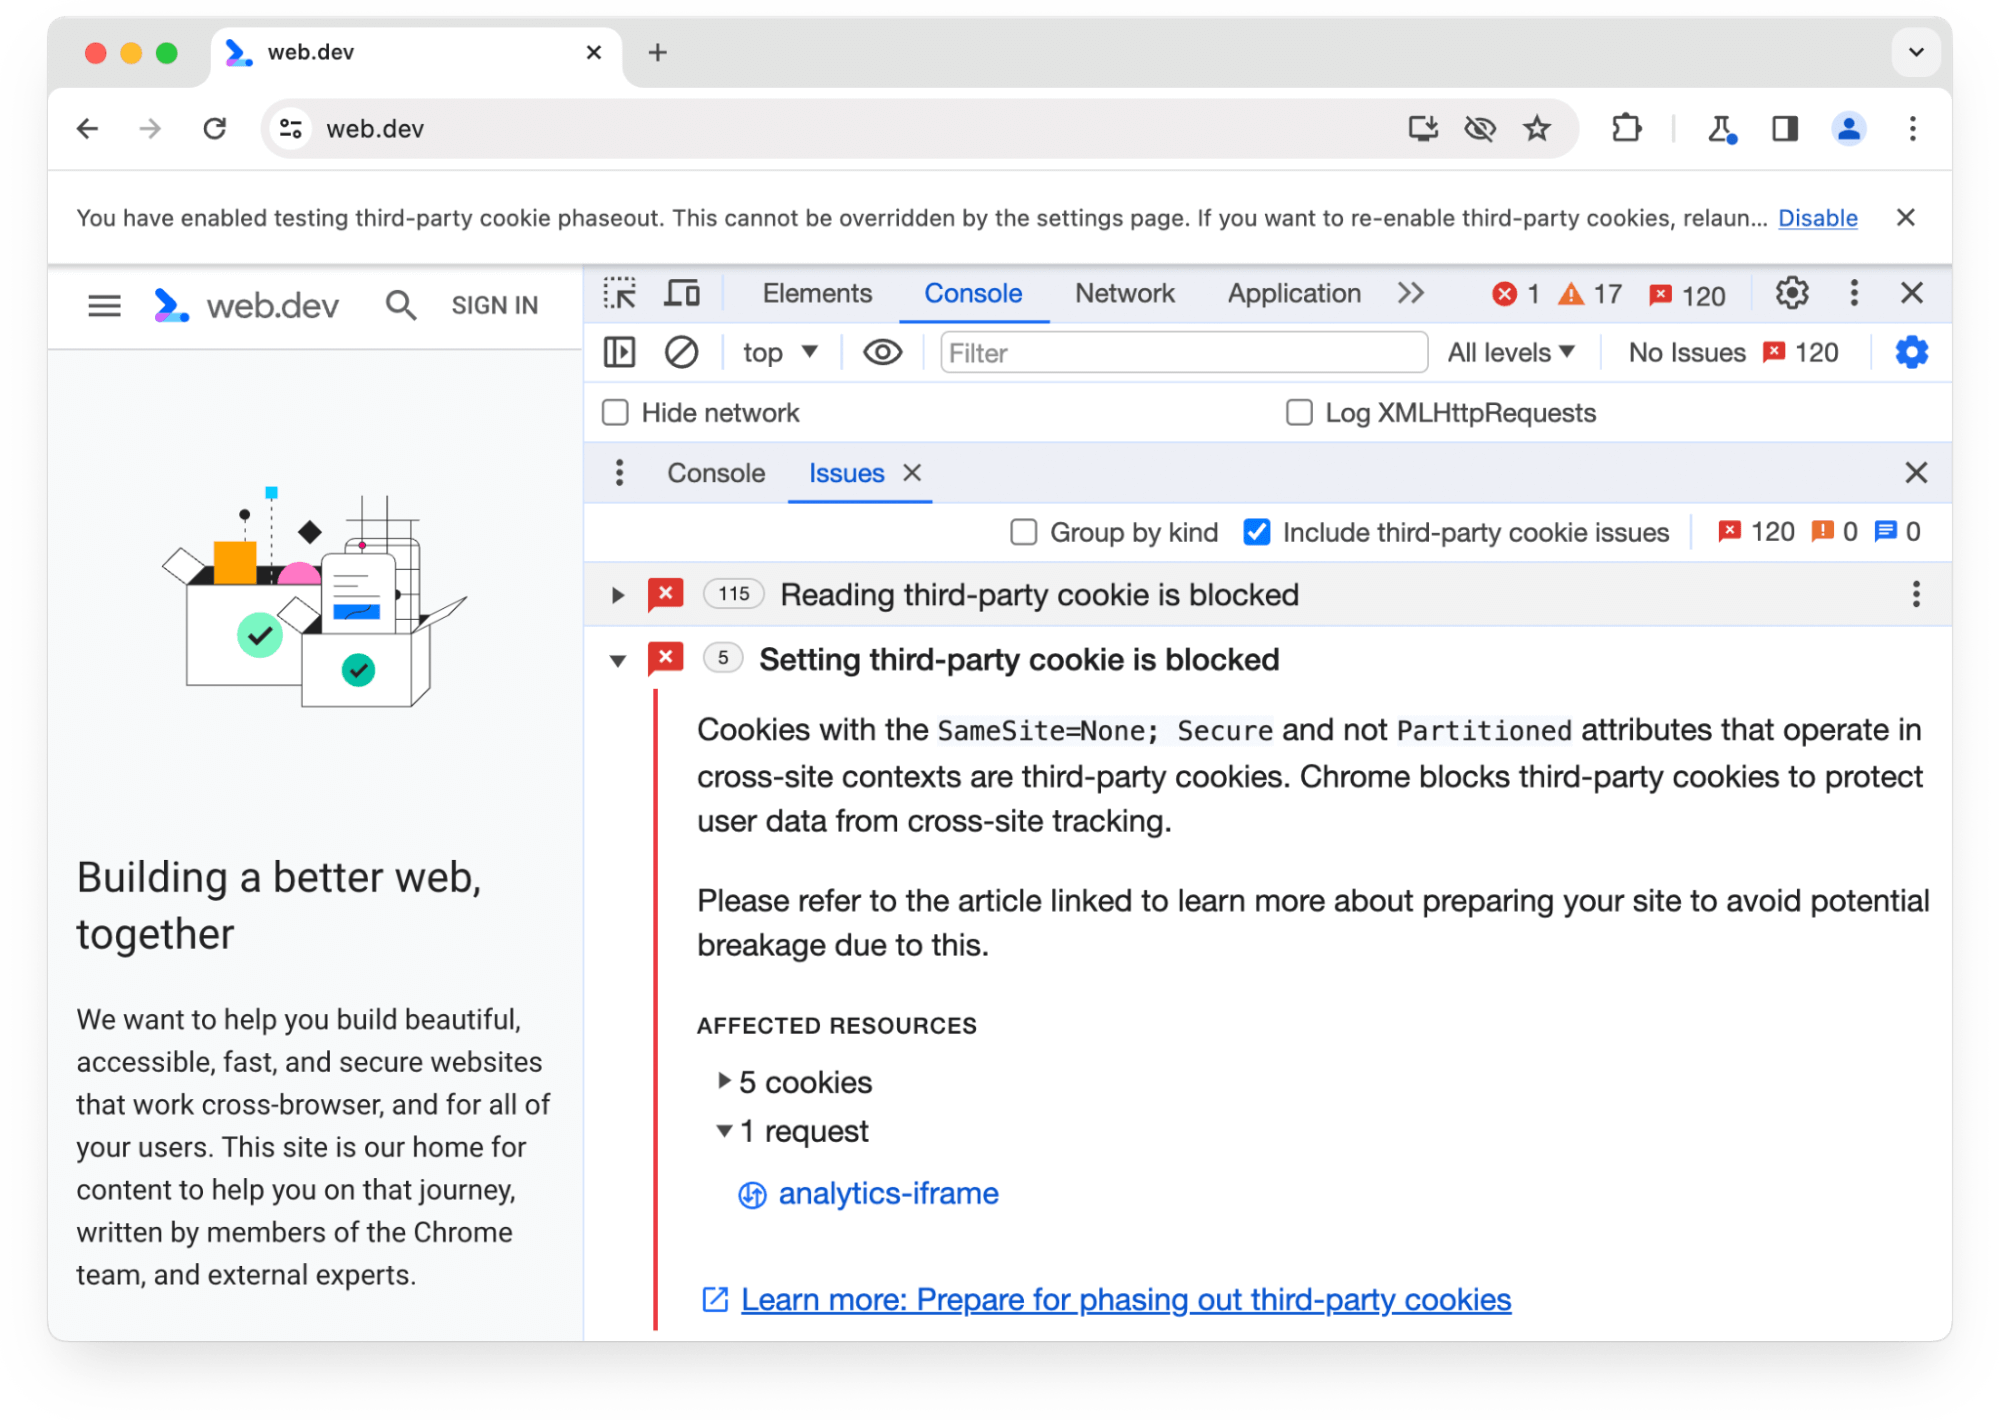 1 件のリクエストで 5 件のサードパーティ Cookie がブロックされていることに関する Chrome DevTools の [Issues] パネルに関する警告。